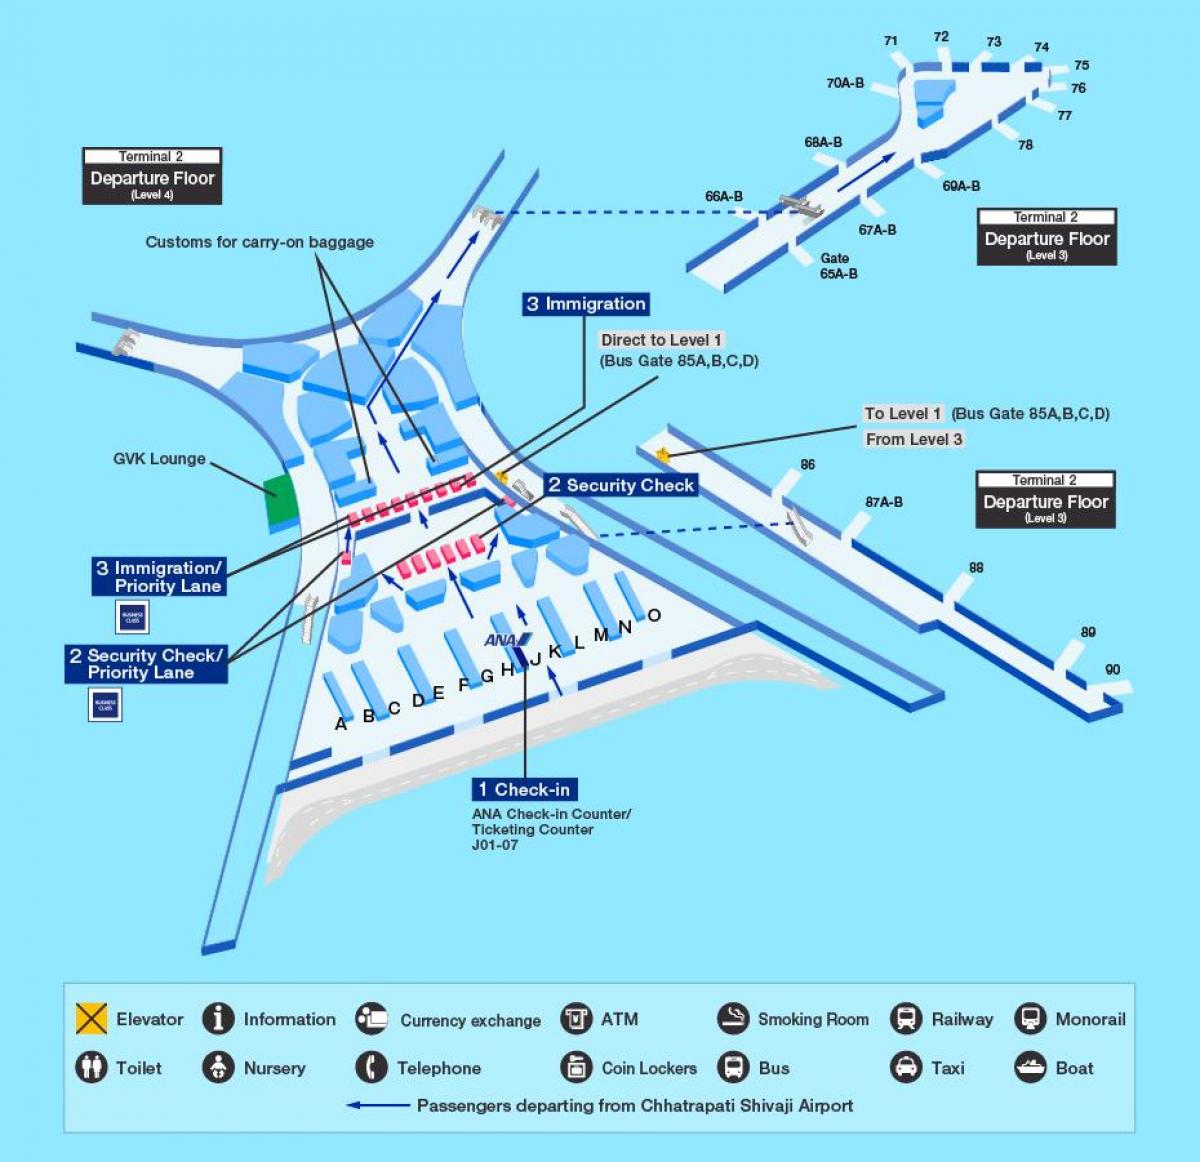 Mumbai international airport terminal 2 arată hartă